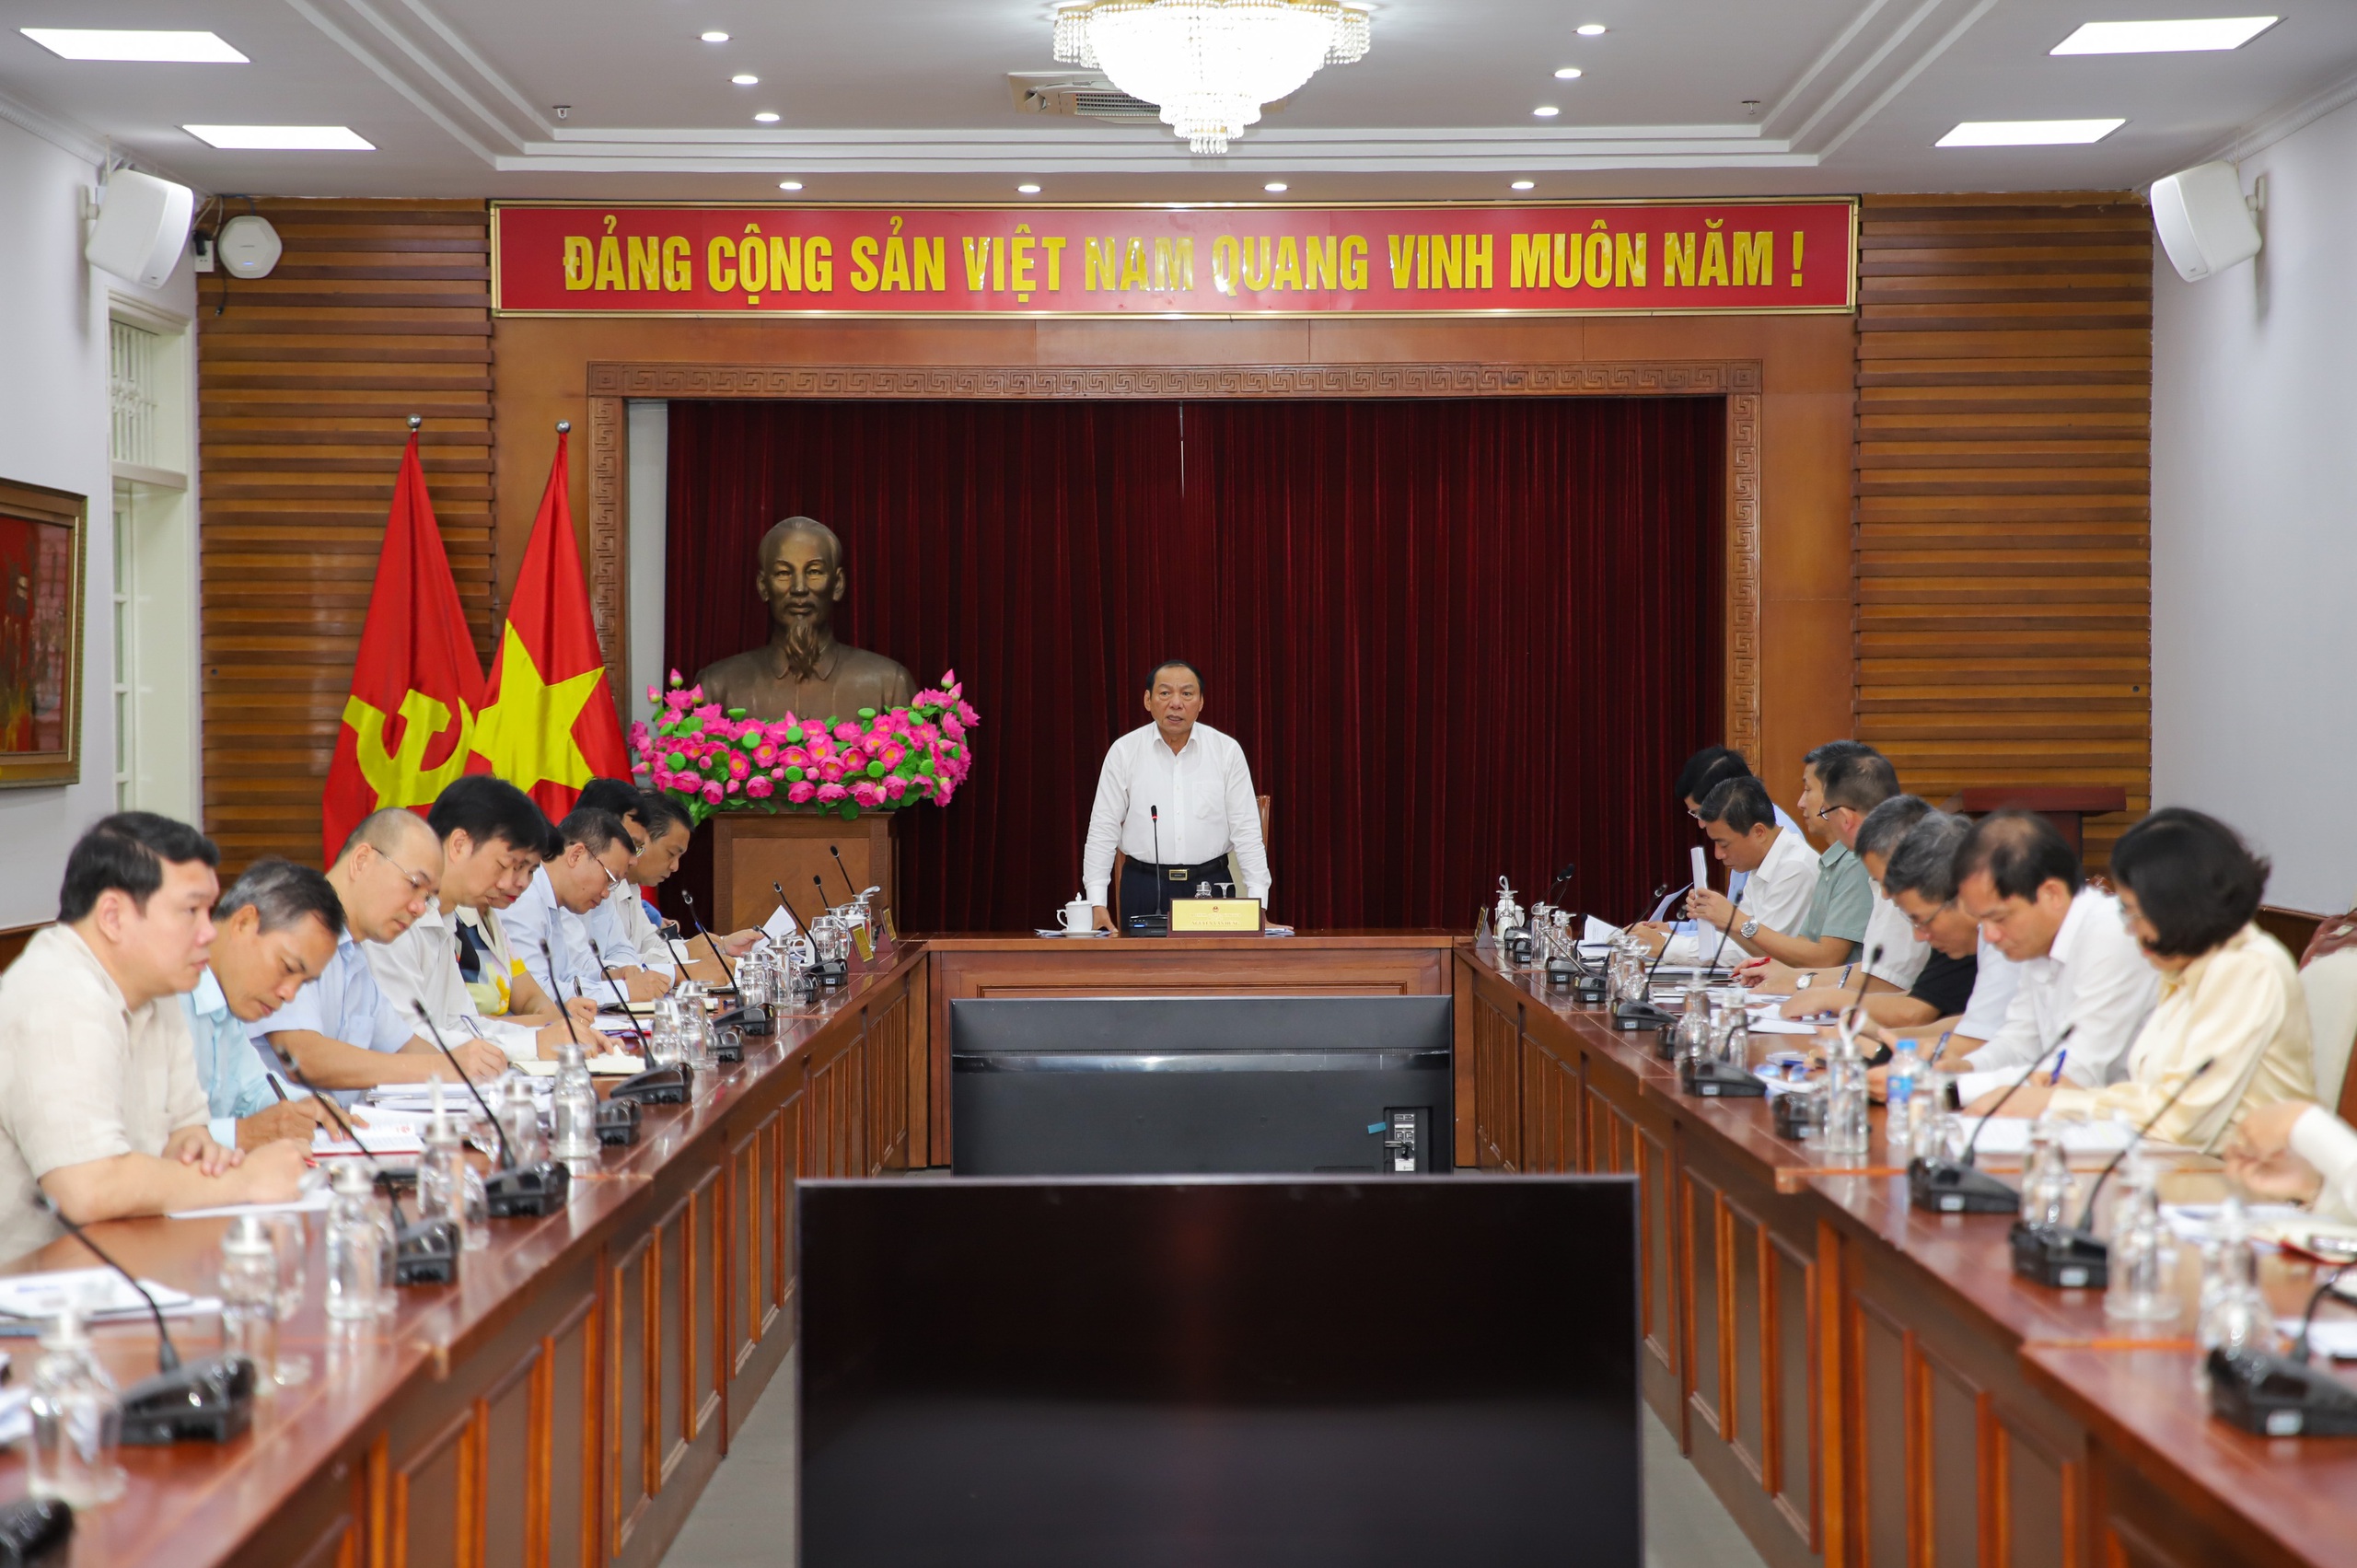 Bộ trưởng Nguyễn Văn Hùng: Rà soát, sửa đổi kịp thời thể chế chính sách để kiến tạo, phát triển hơn nữa ngành Thể thao - Ảnh 1.